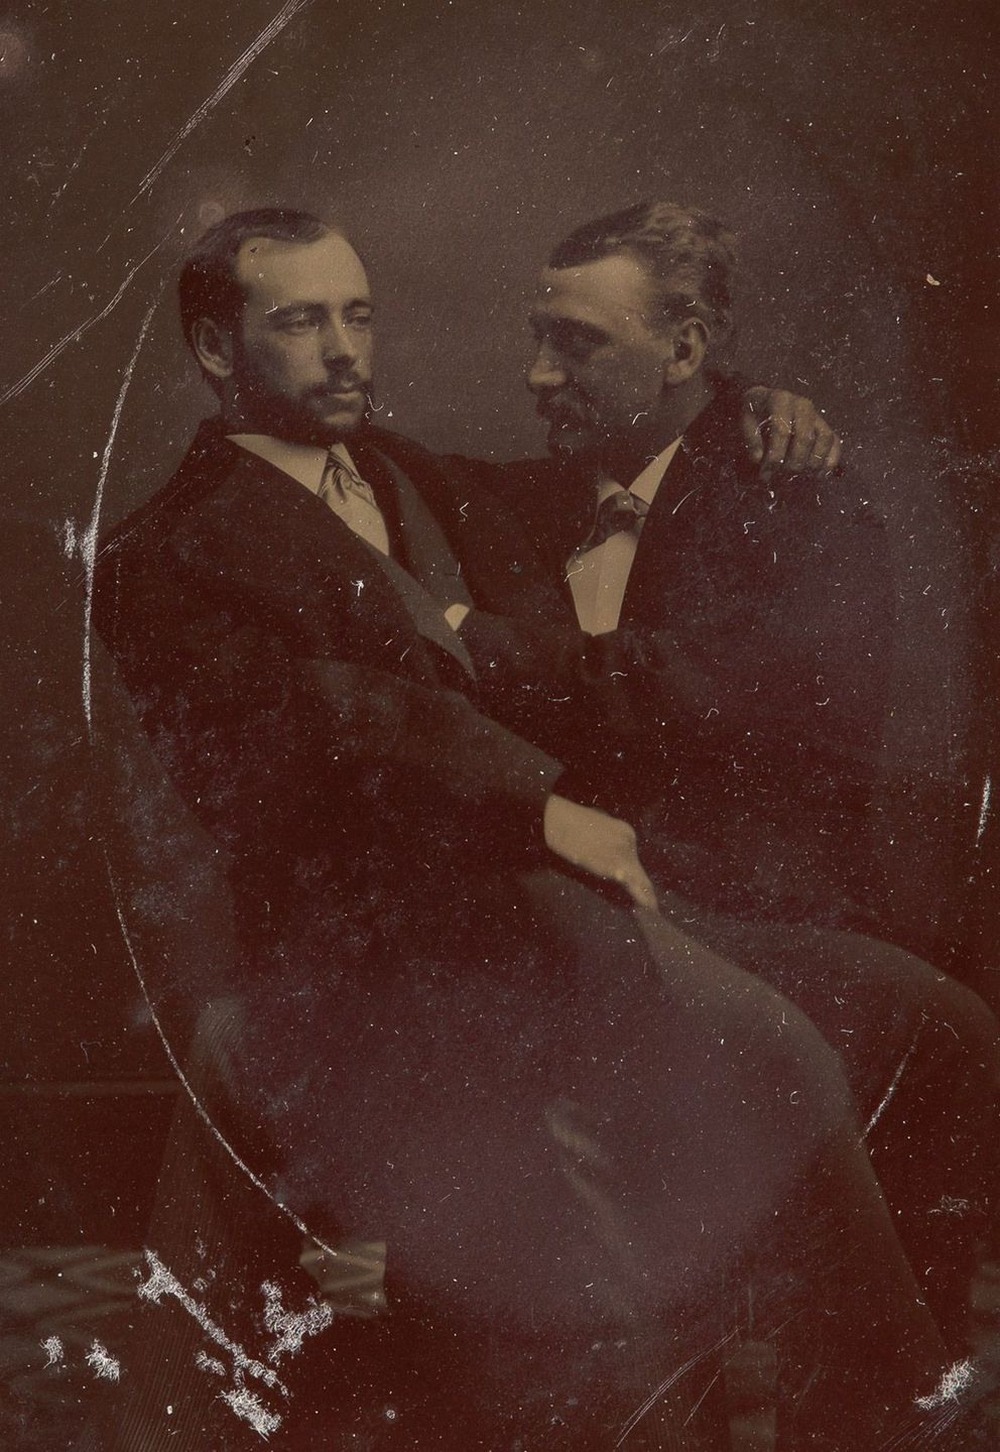 Броманс в викторианскую эпоху: интимные мужские объятия в редких фотографиях конца 1800-х годов  9